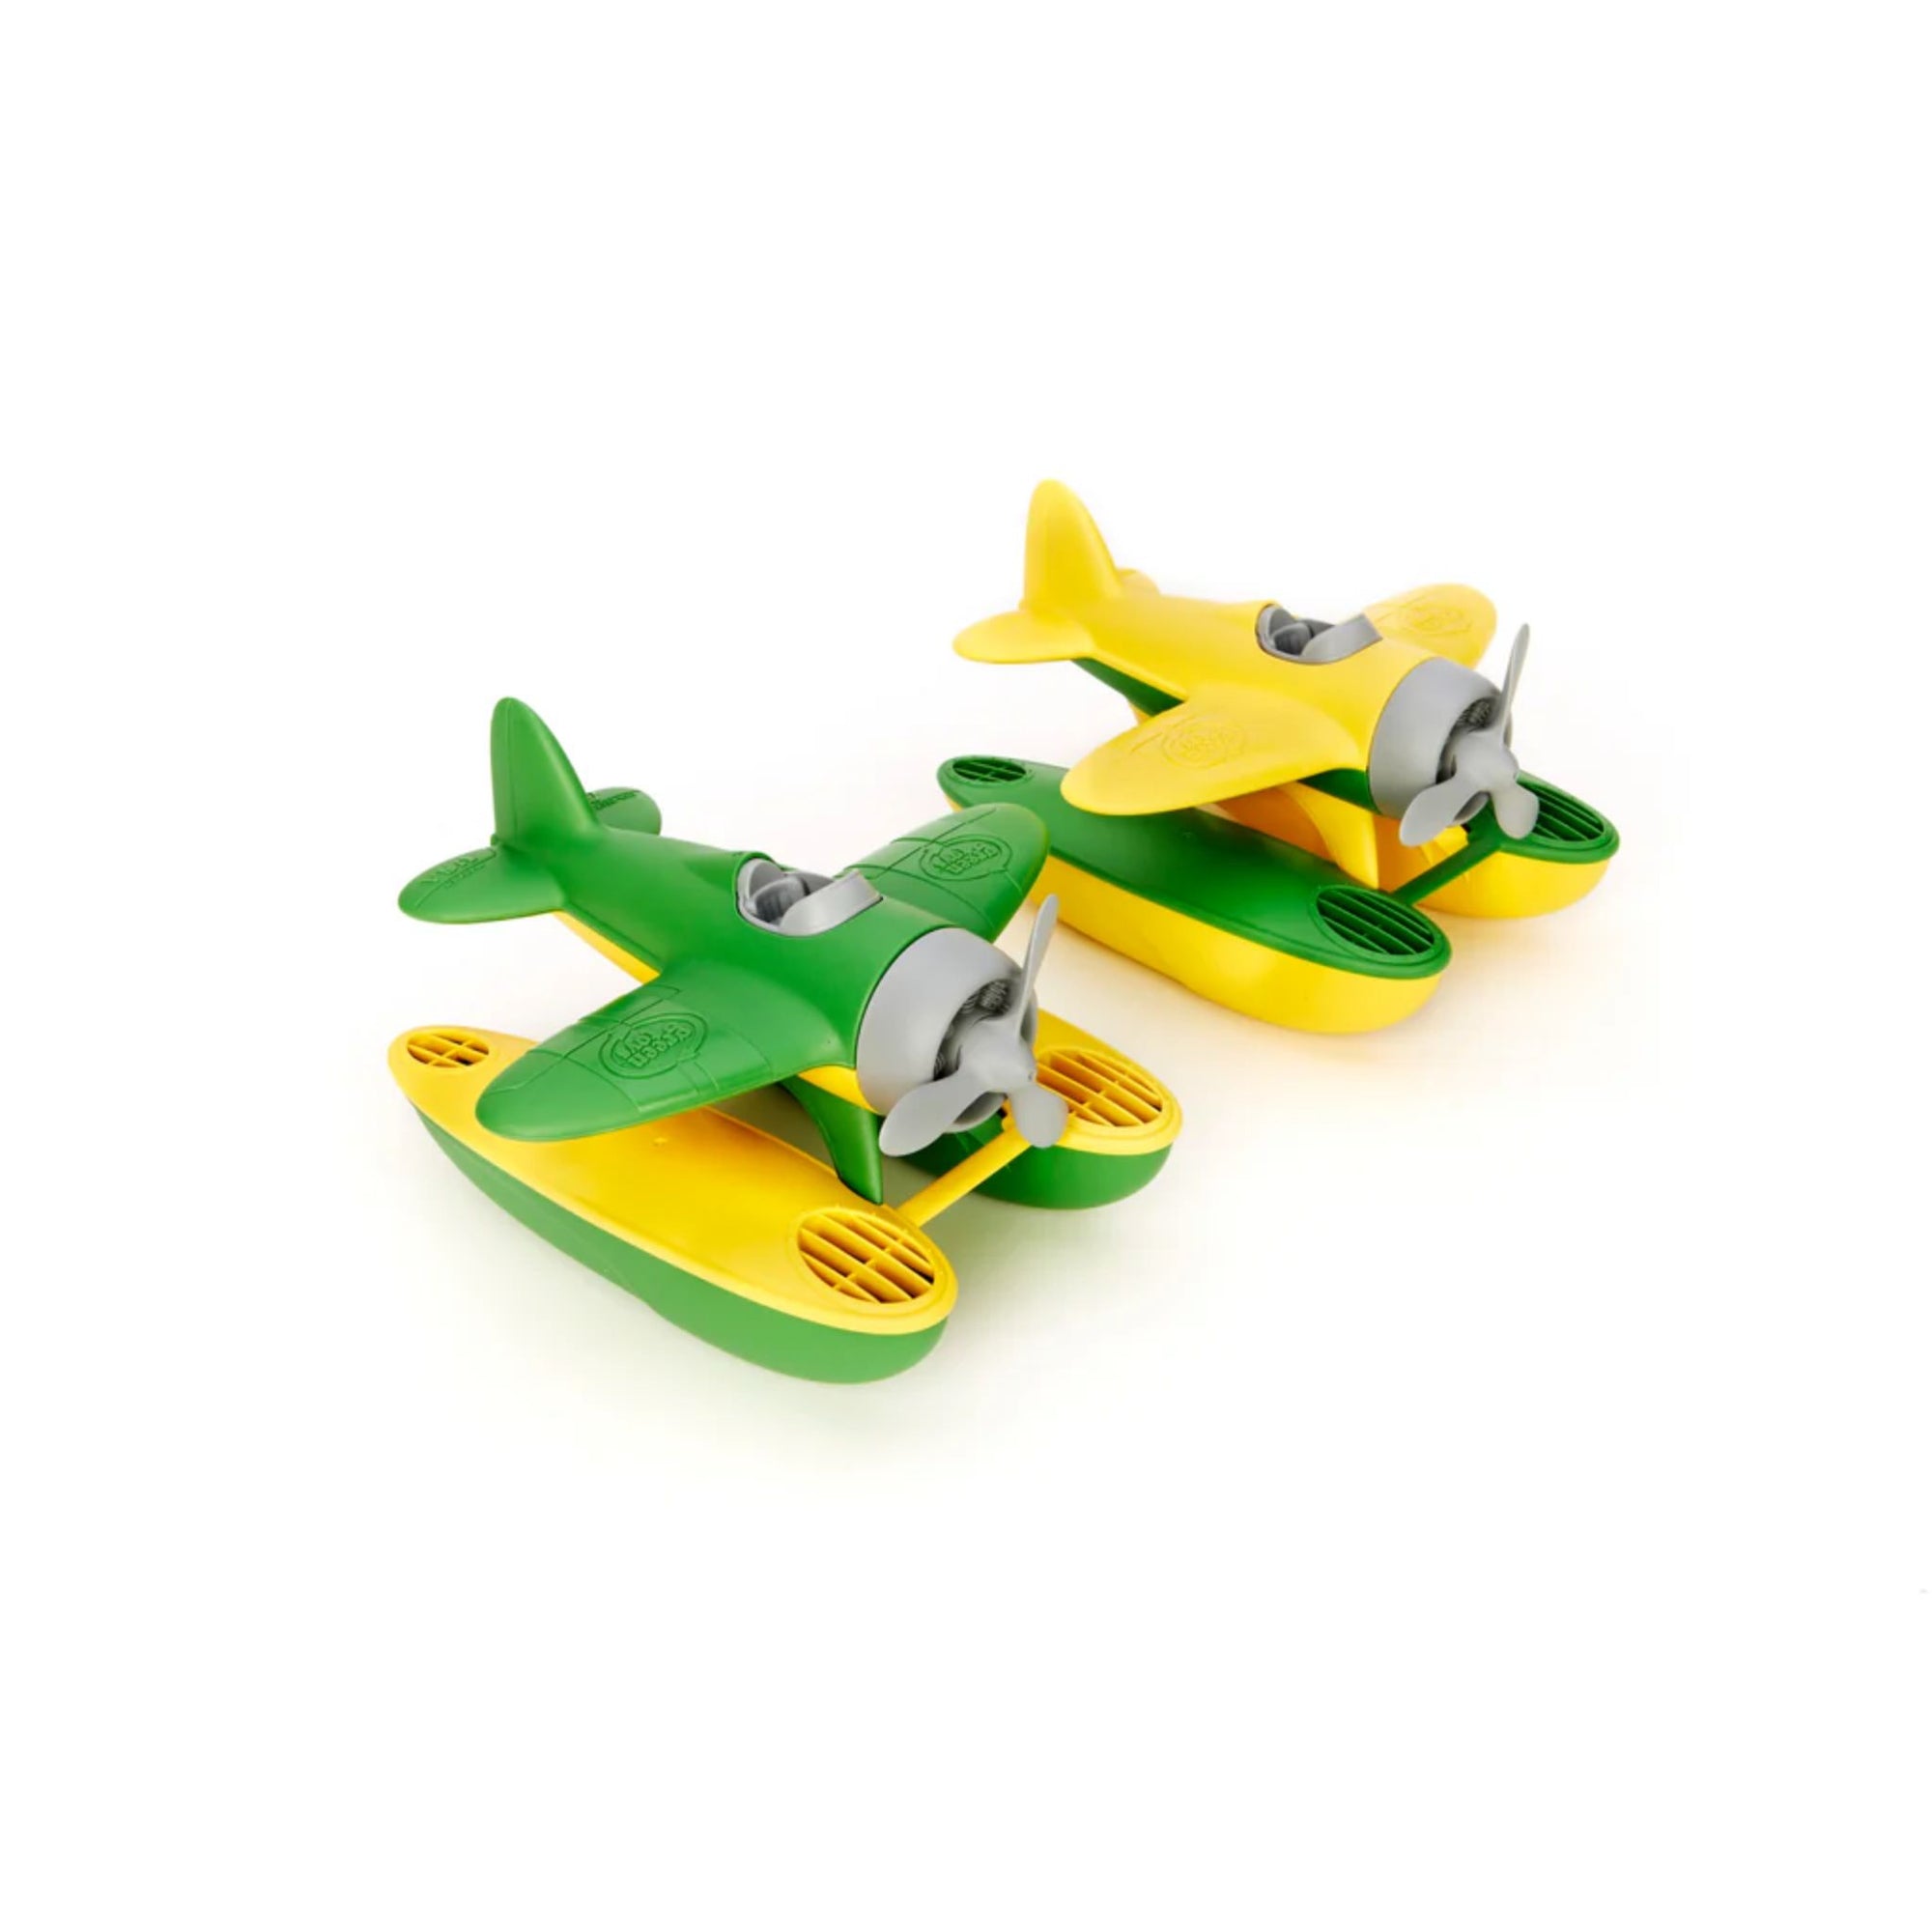 Green Toys Seaplane - Yellow